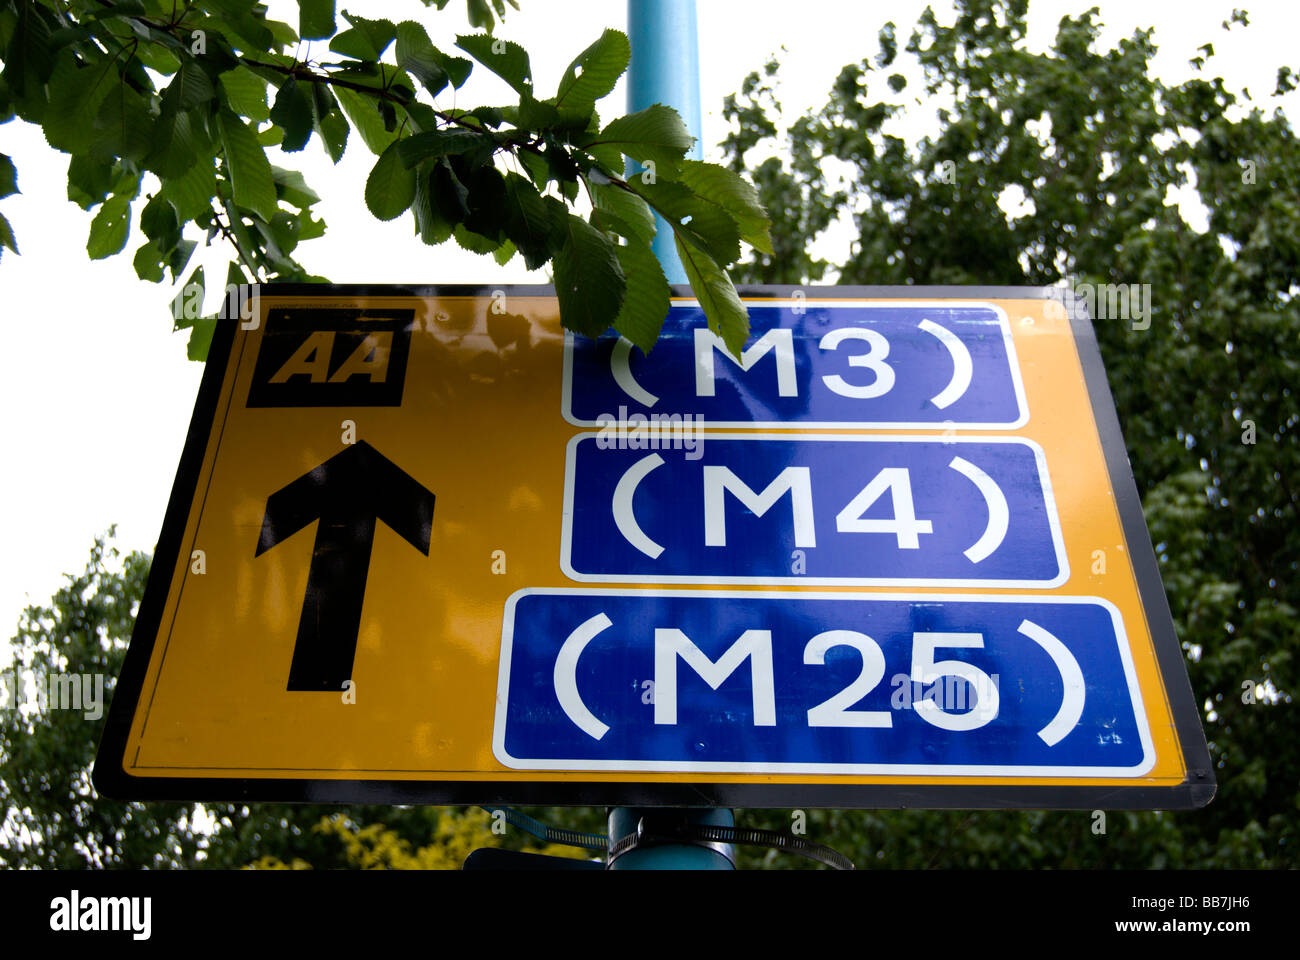 aa Verkehrsschild zeigt Richtungen Autobahnen m3, m4 und m25, neben Twickenham Stadion, Middlesex, england Stockfoto